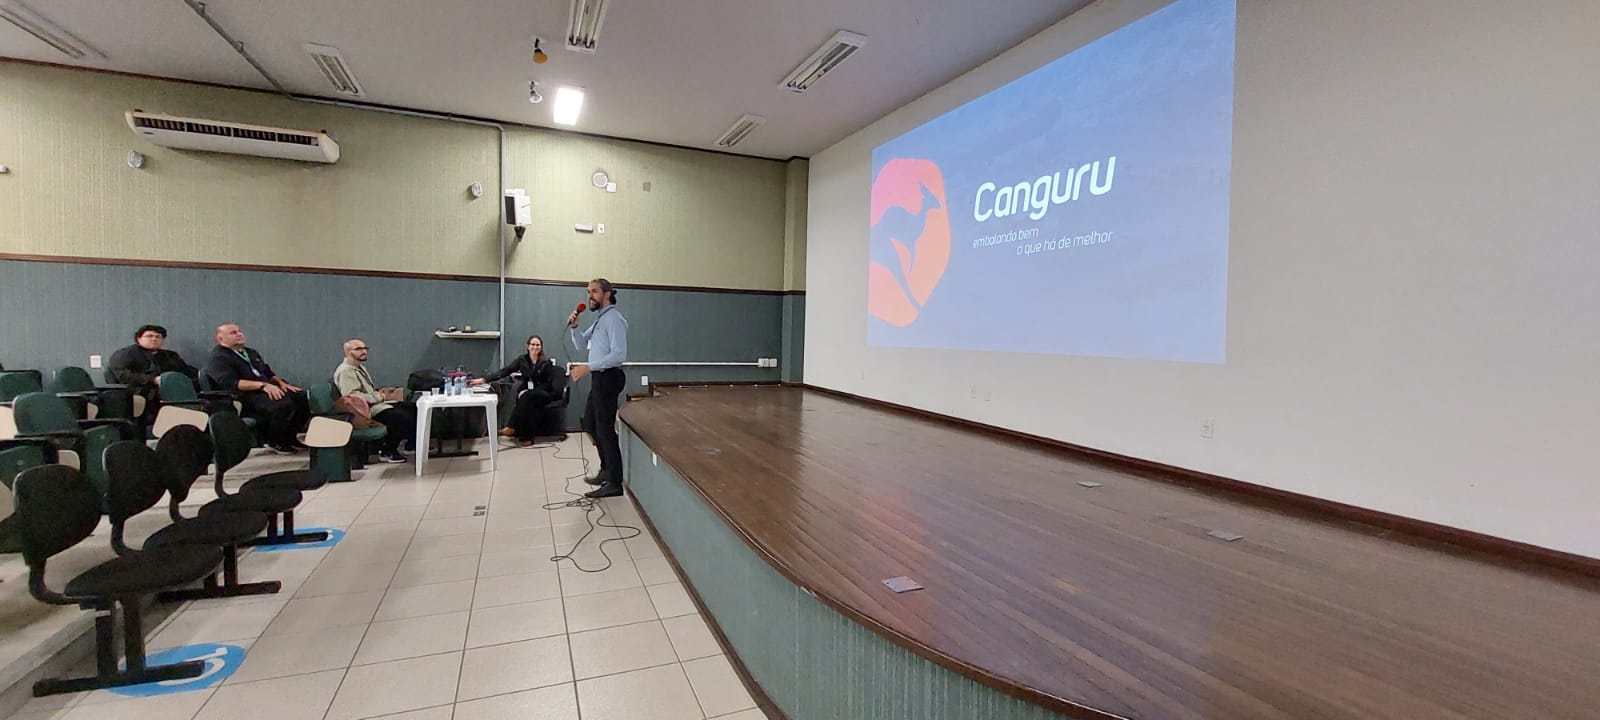 Acadêmicos da UniSatc têm encontro de inovação e tecnologia com empresa Canguru Plásticos